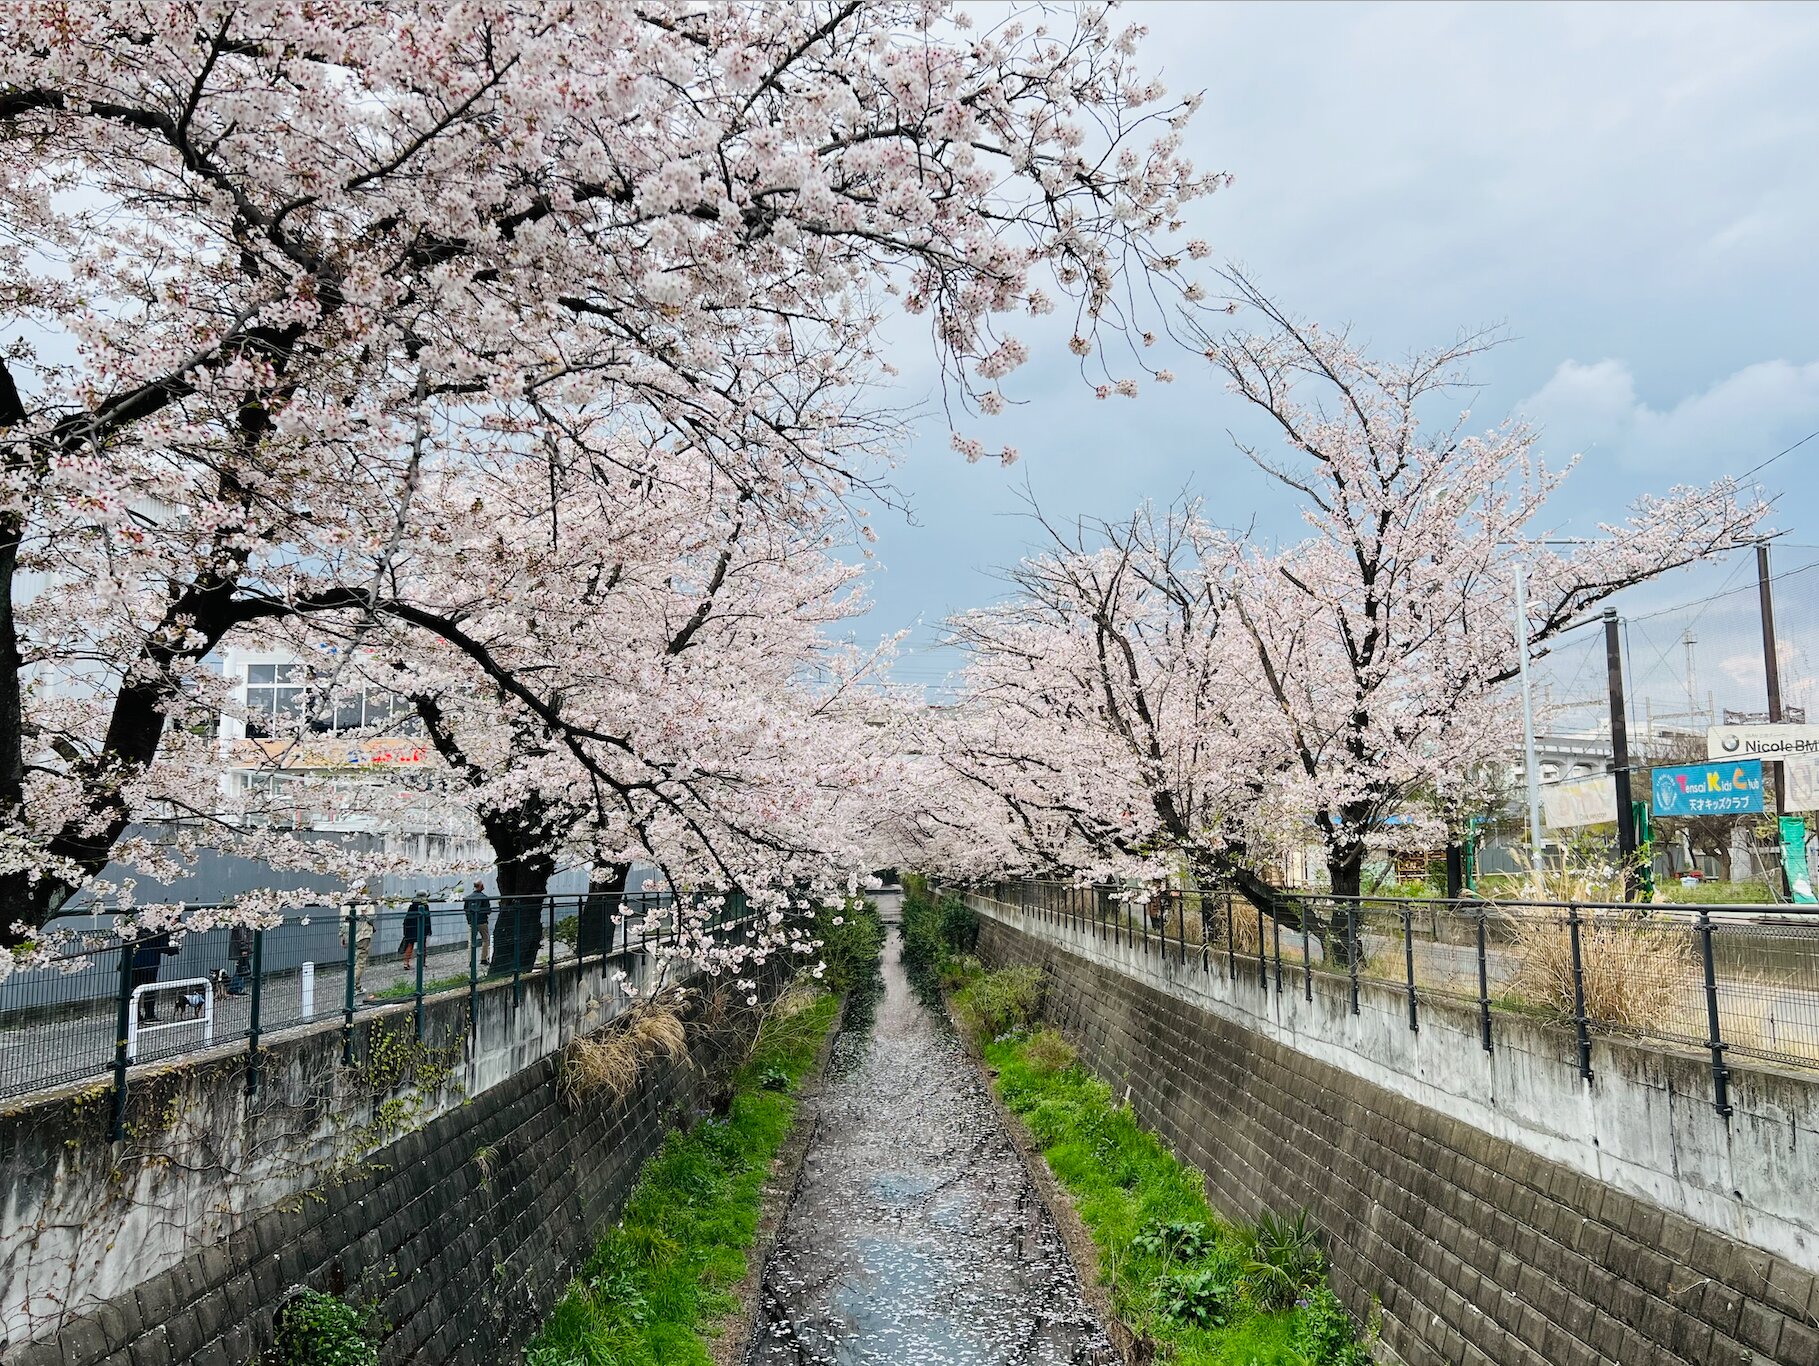 開花から１週間ほどで見られる麻生川の花いかだ。散ったあとも桜の美しさが楽しめるのが麻生川桜並木の魅力。